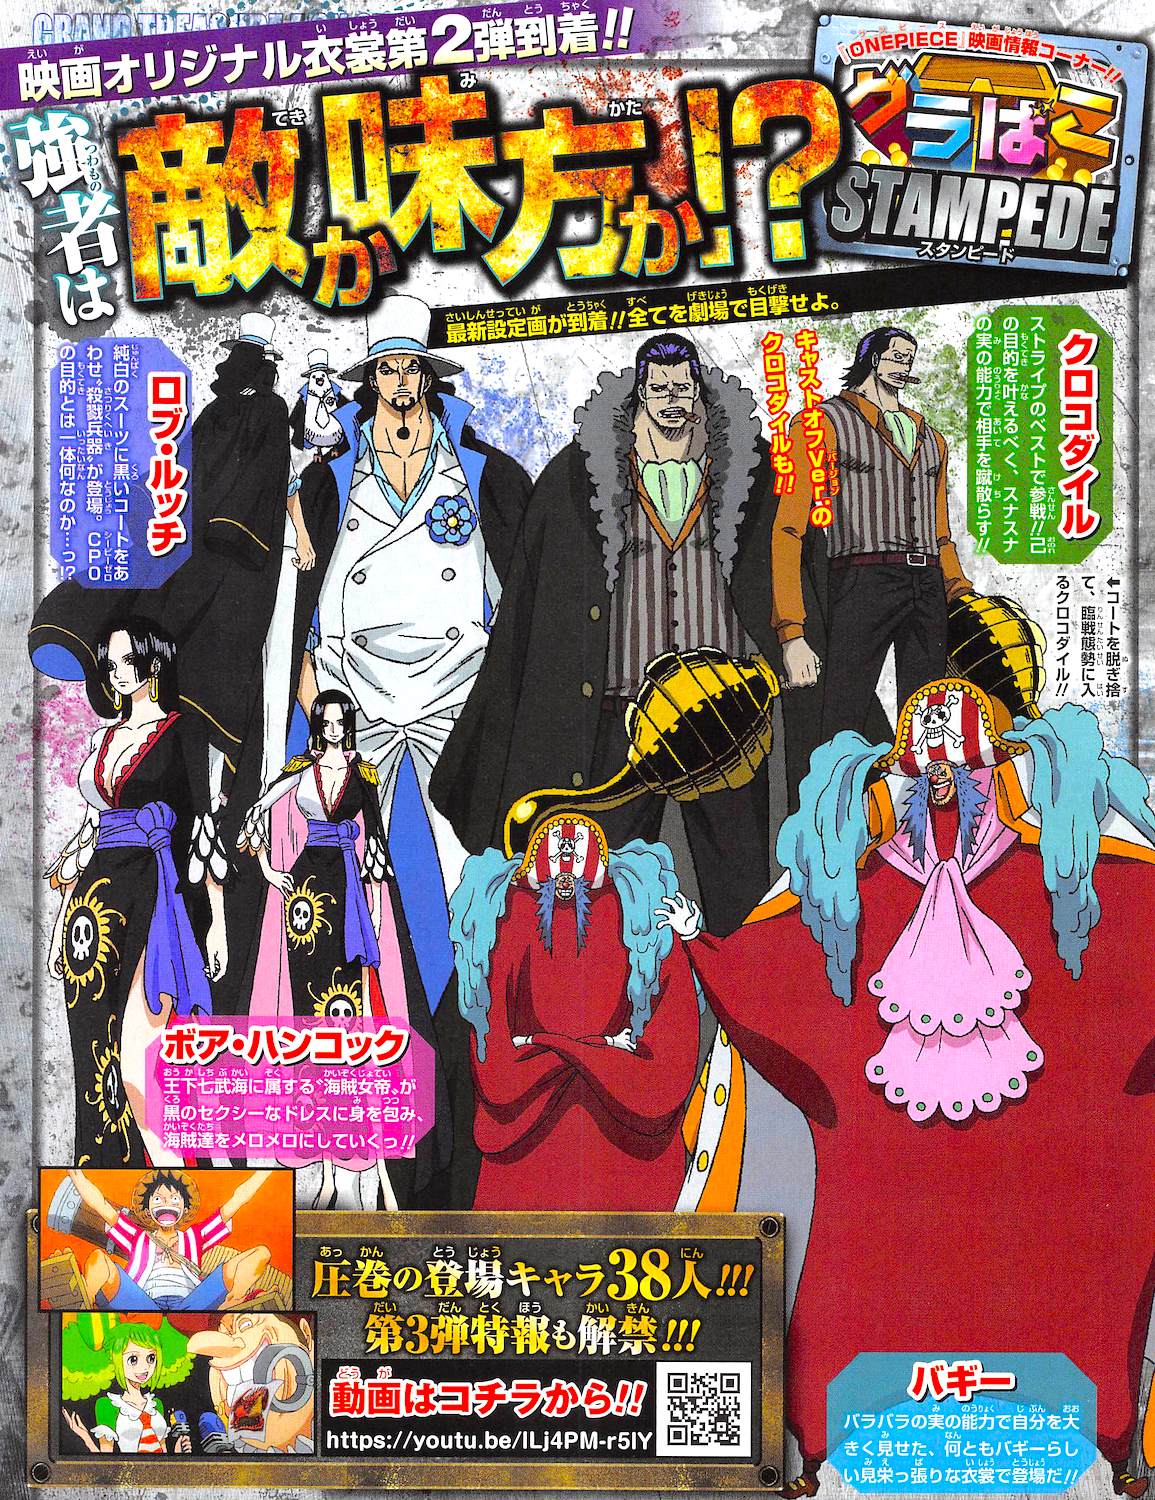 One Piece: Stampede apresenta o vilão mais forte da saga até agora